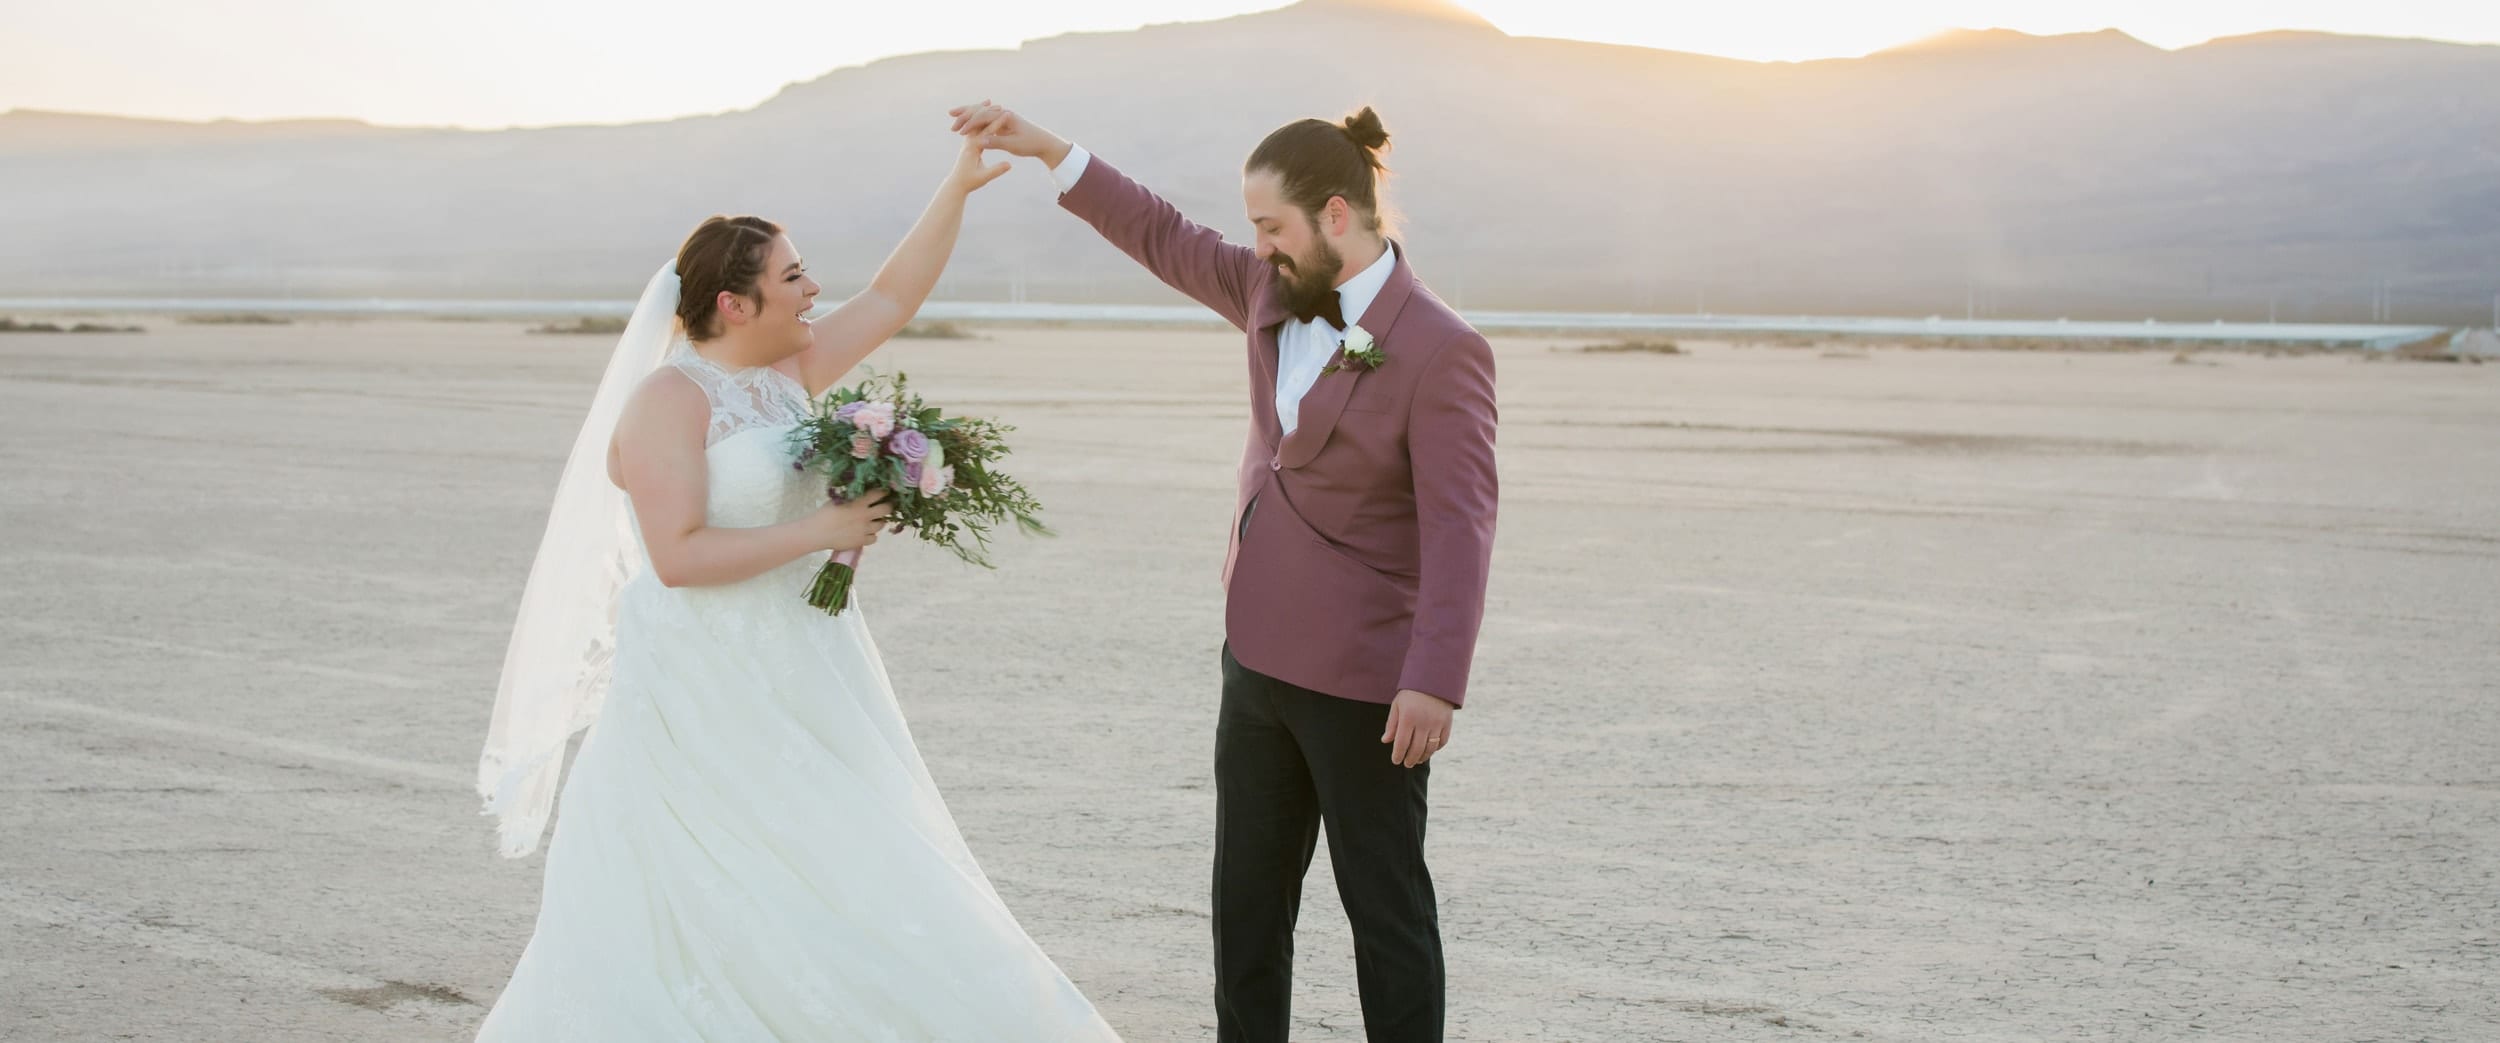 Bride and groom dancing in the Dry Lake Bed in Las Vegas.